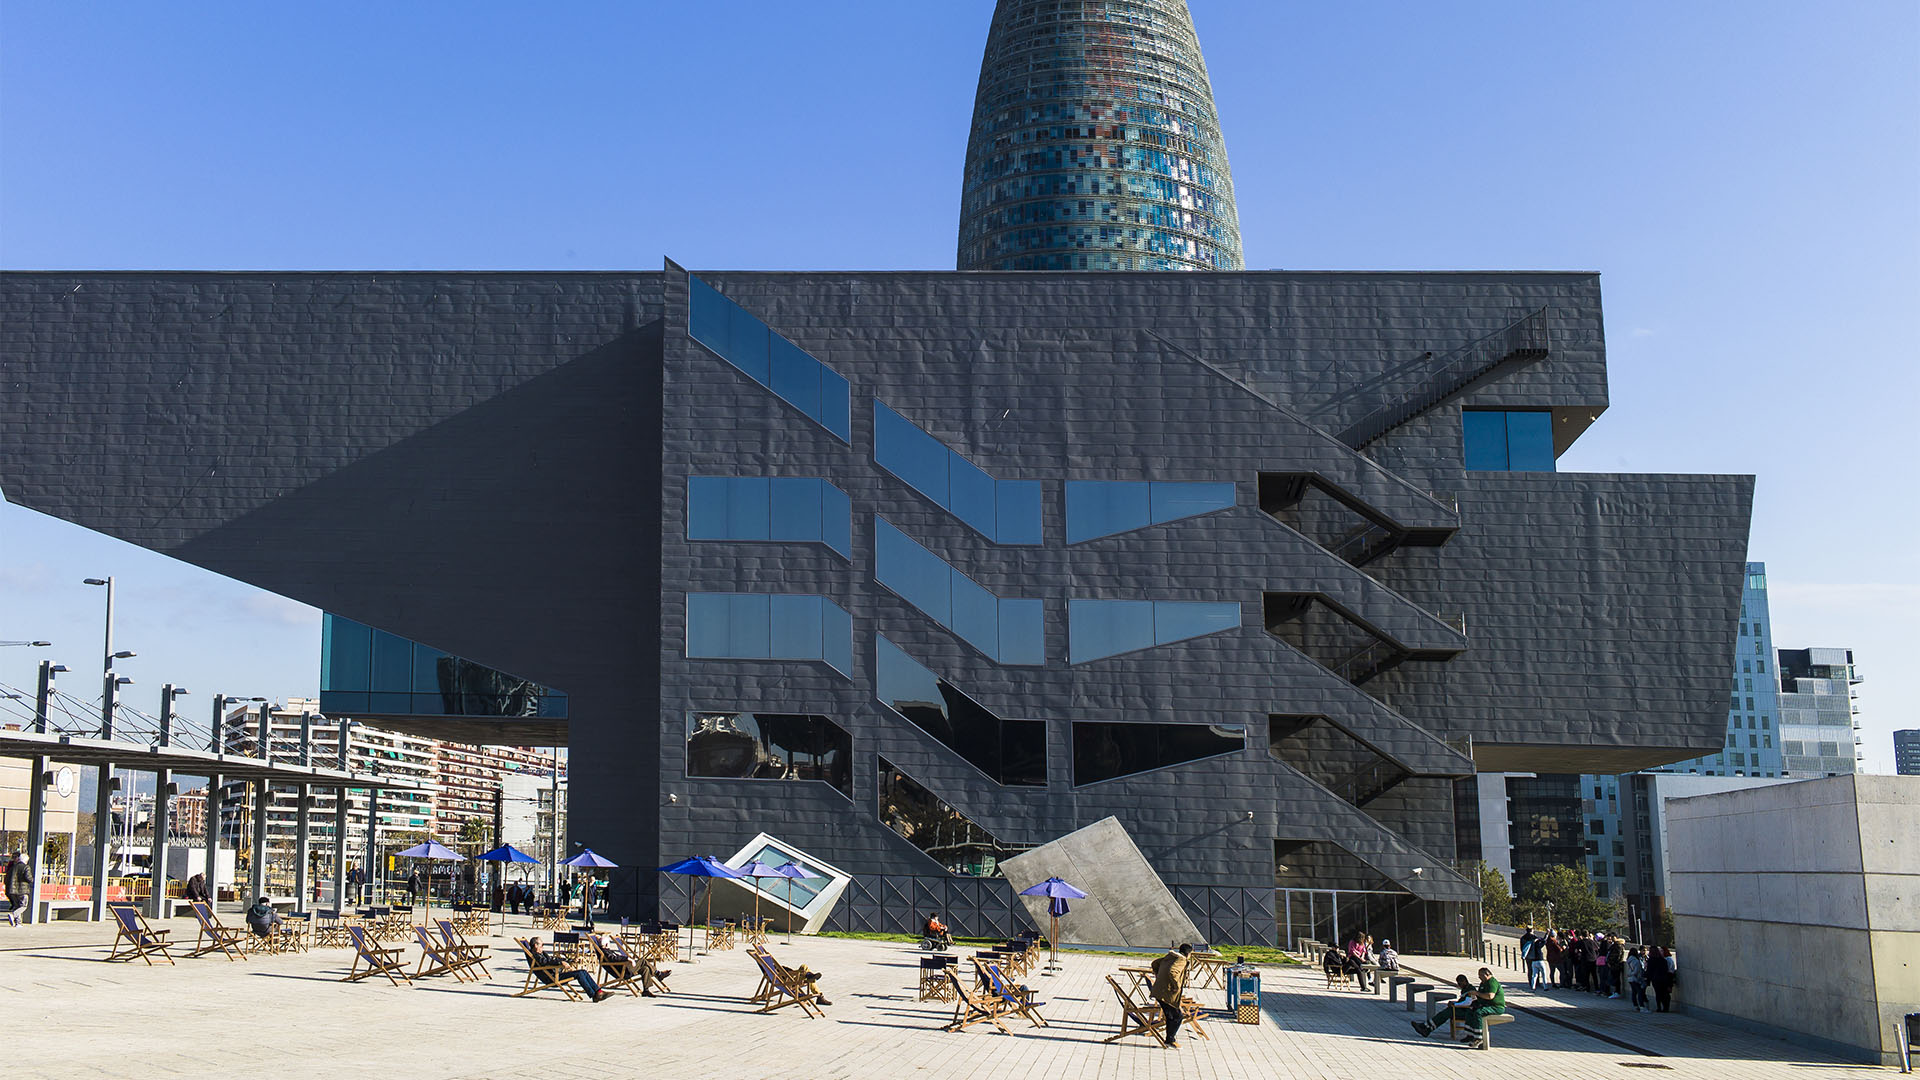 Bei sonnigem Wetter im Liegestuhl vor dem Designmuseum Barcelona entspannen. Die Stadt vermietet gegen kleinen Obulus Plätze an der Sonne. Bücher, Zeitungen, Brettspiele inkludiert.